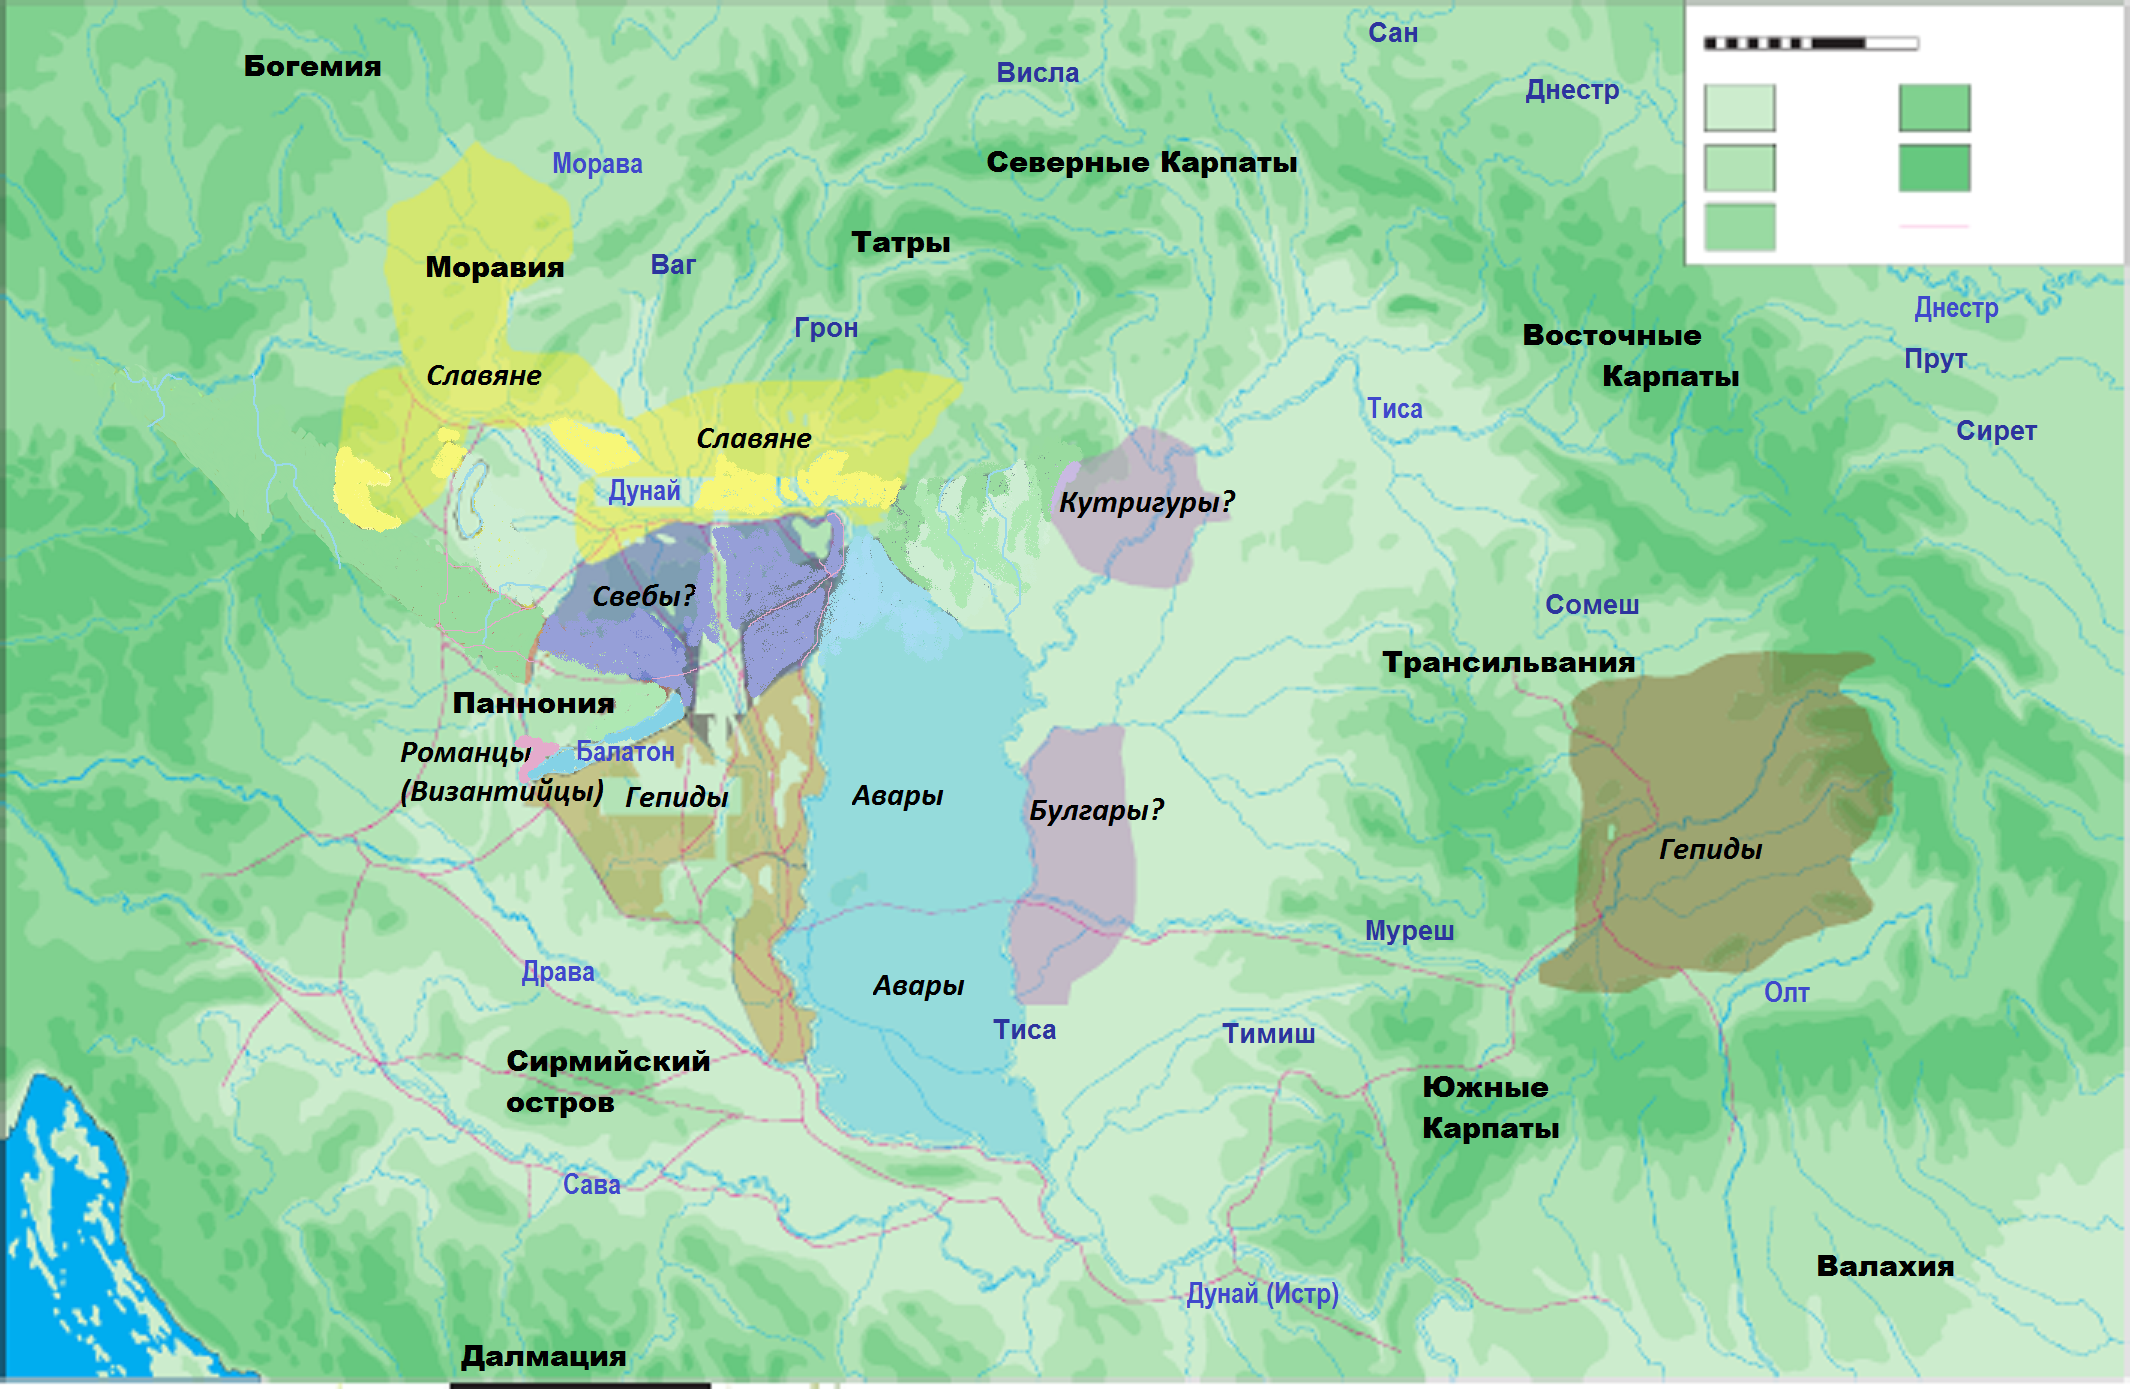 Этническая ситуация в Карпатской котловине периода 568-630 года на основании анализа археологических находок по П. Штадлеру